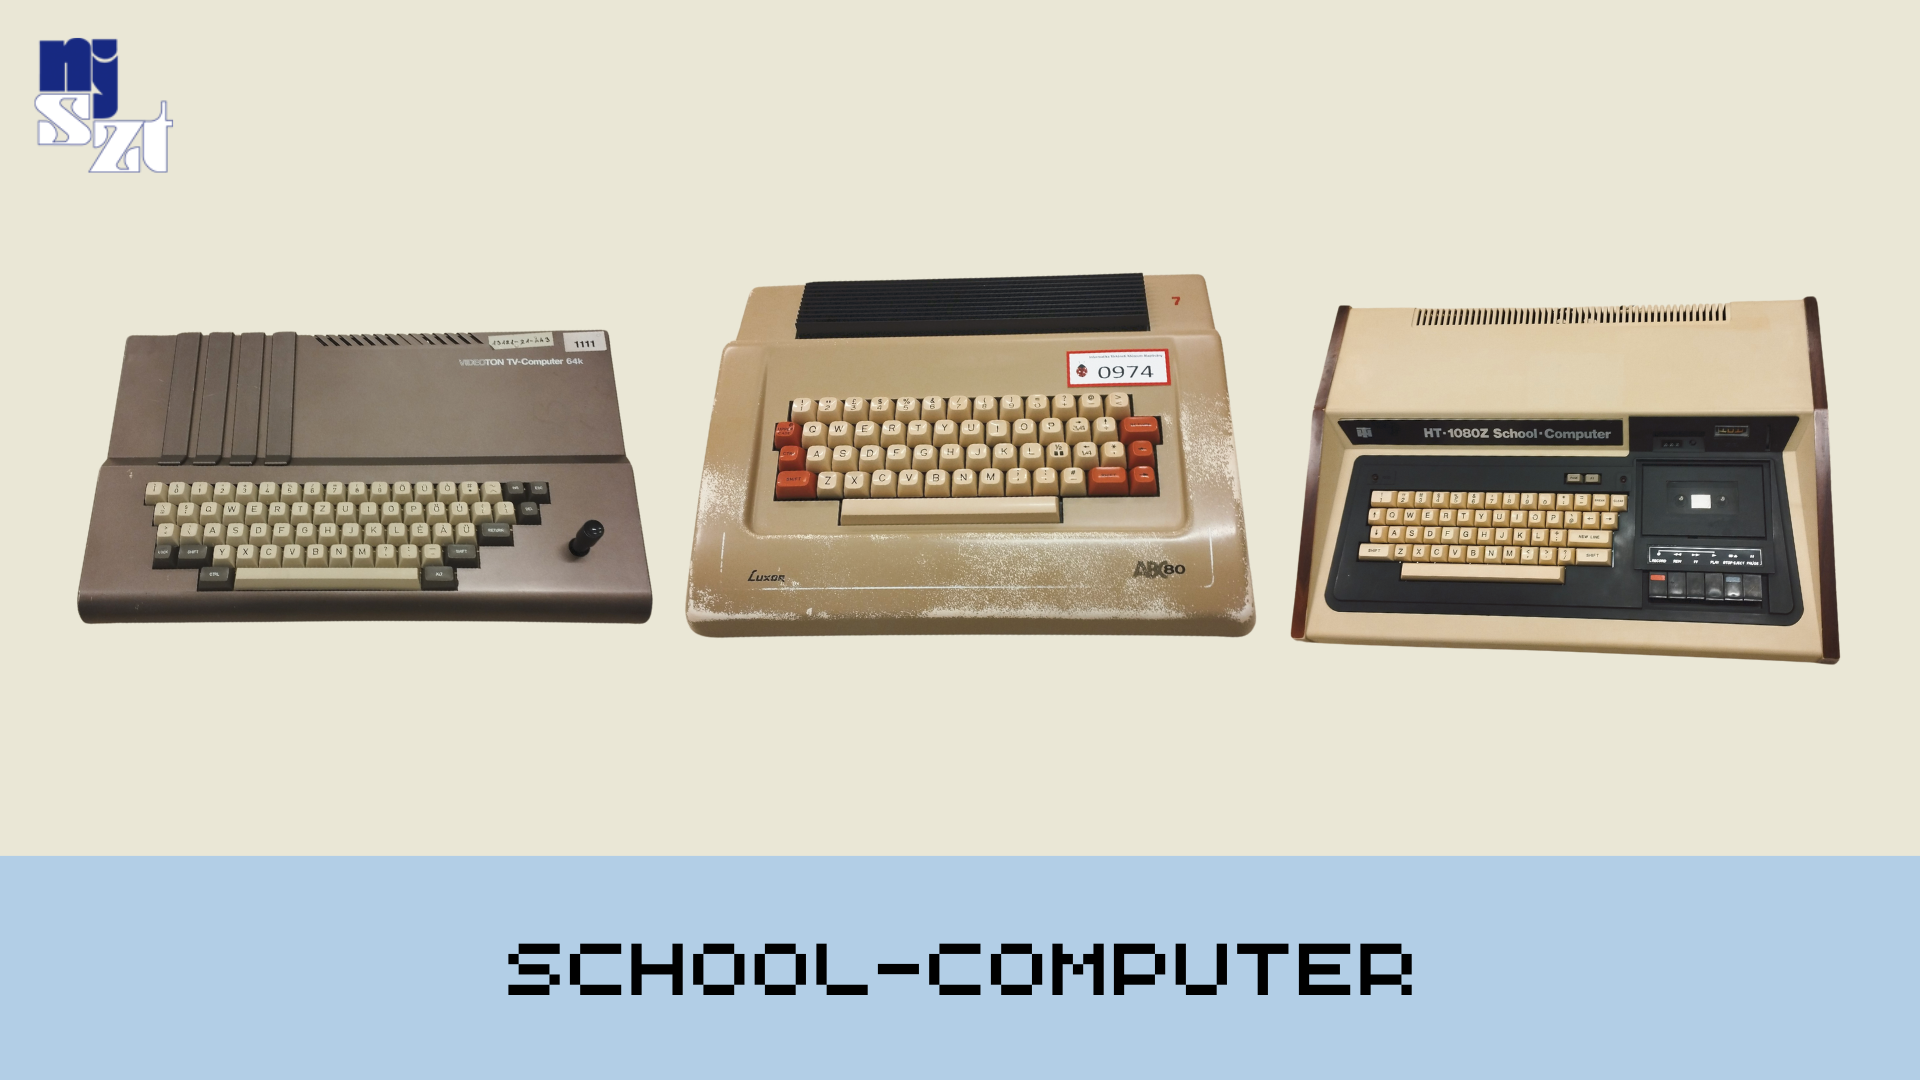 Ezek a számítógépek hozták el a digitális kultúrát az iskolákba